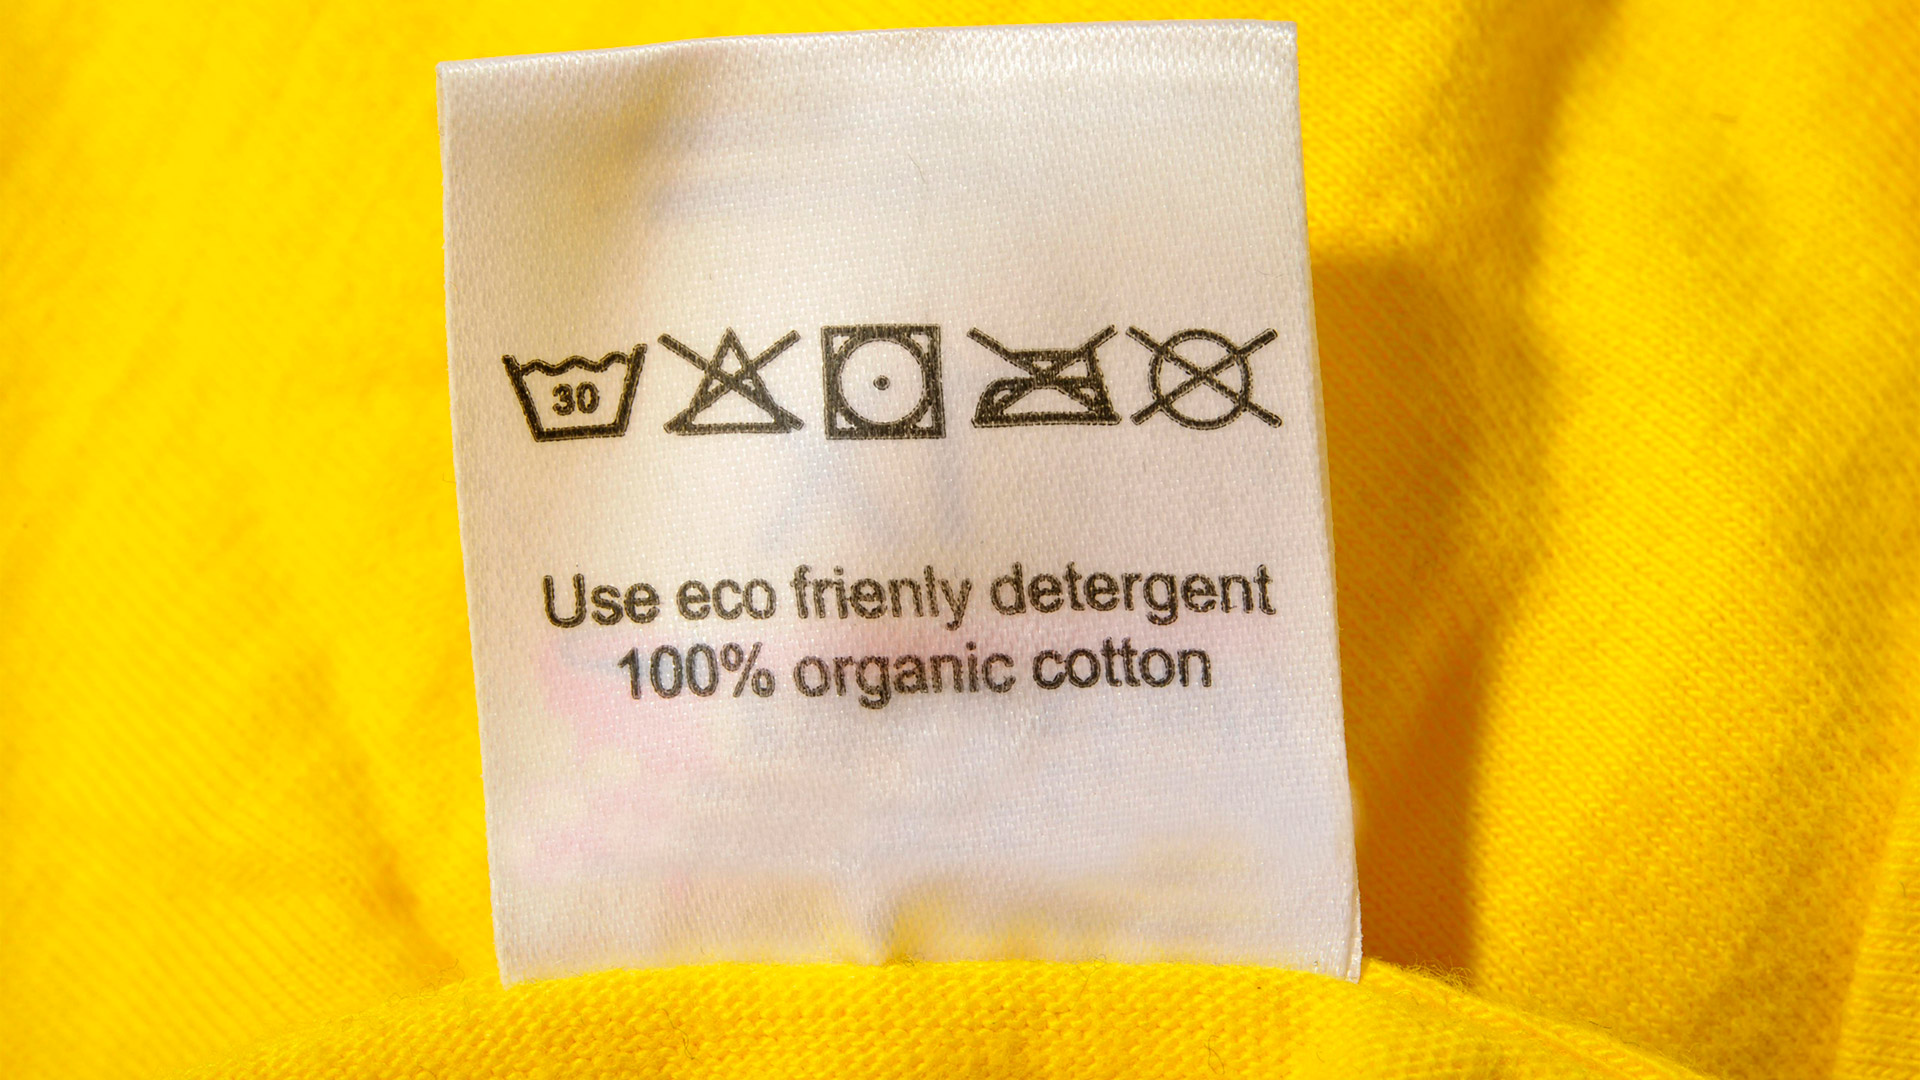 100% Bio-Baumwolle Label an einem T-Shirt  | picture alliance / imageBROKER